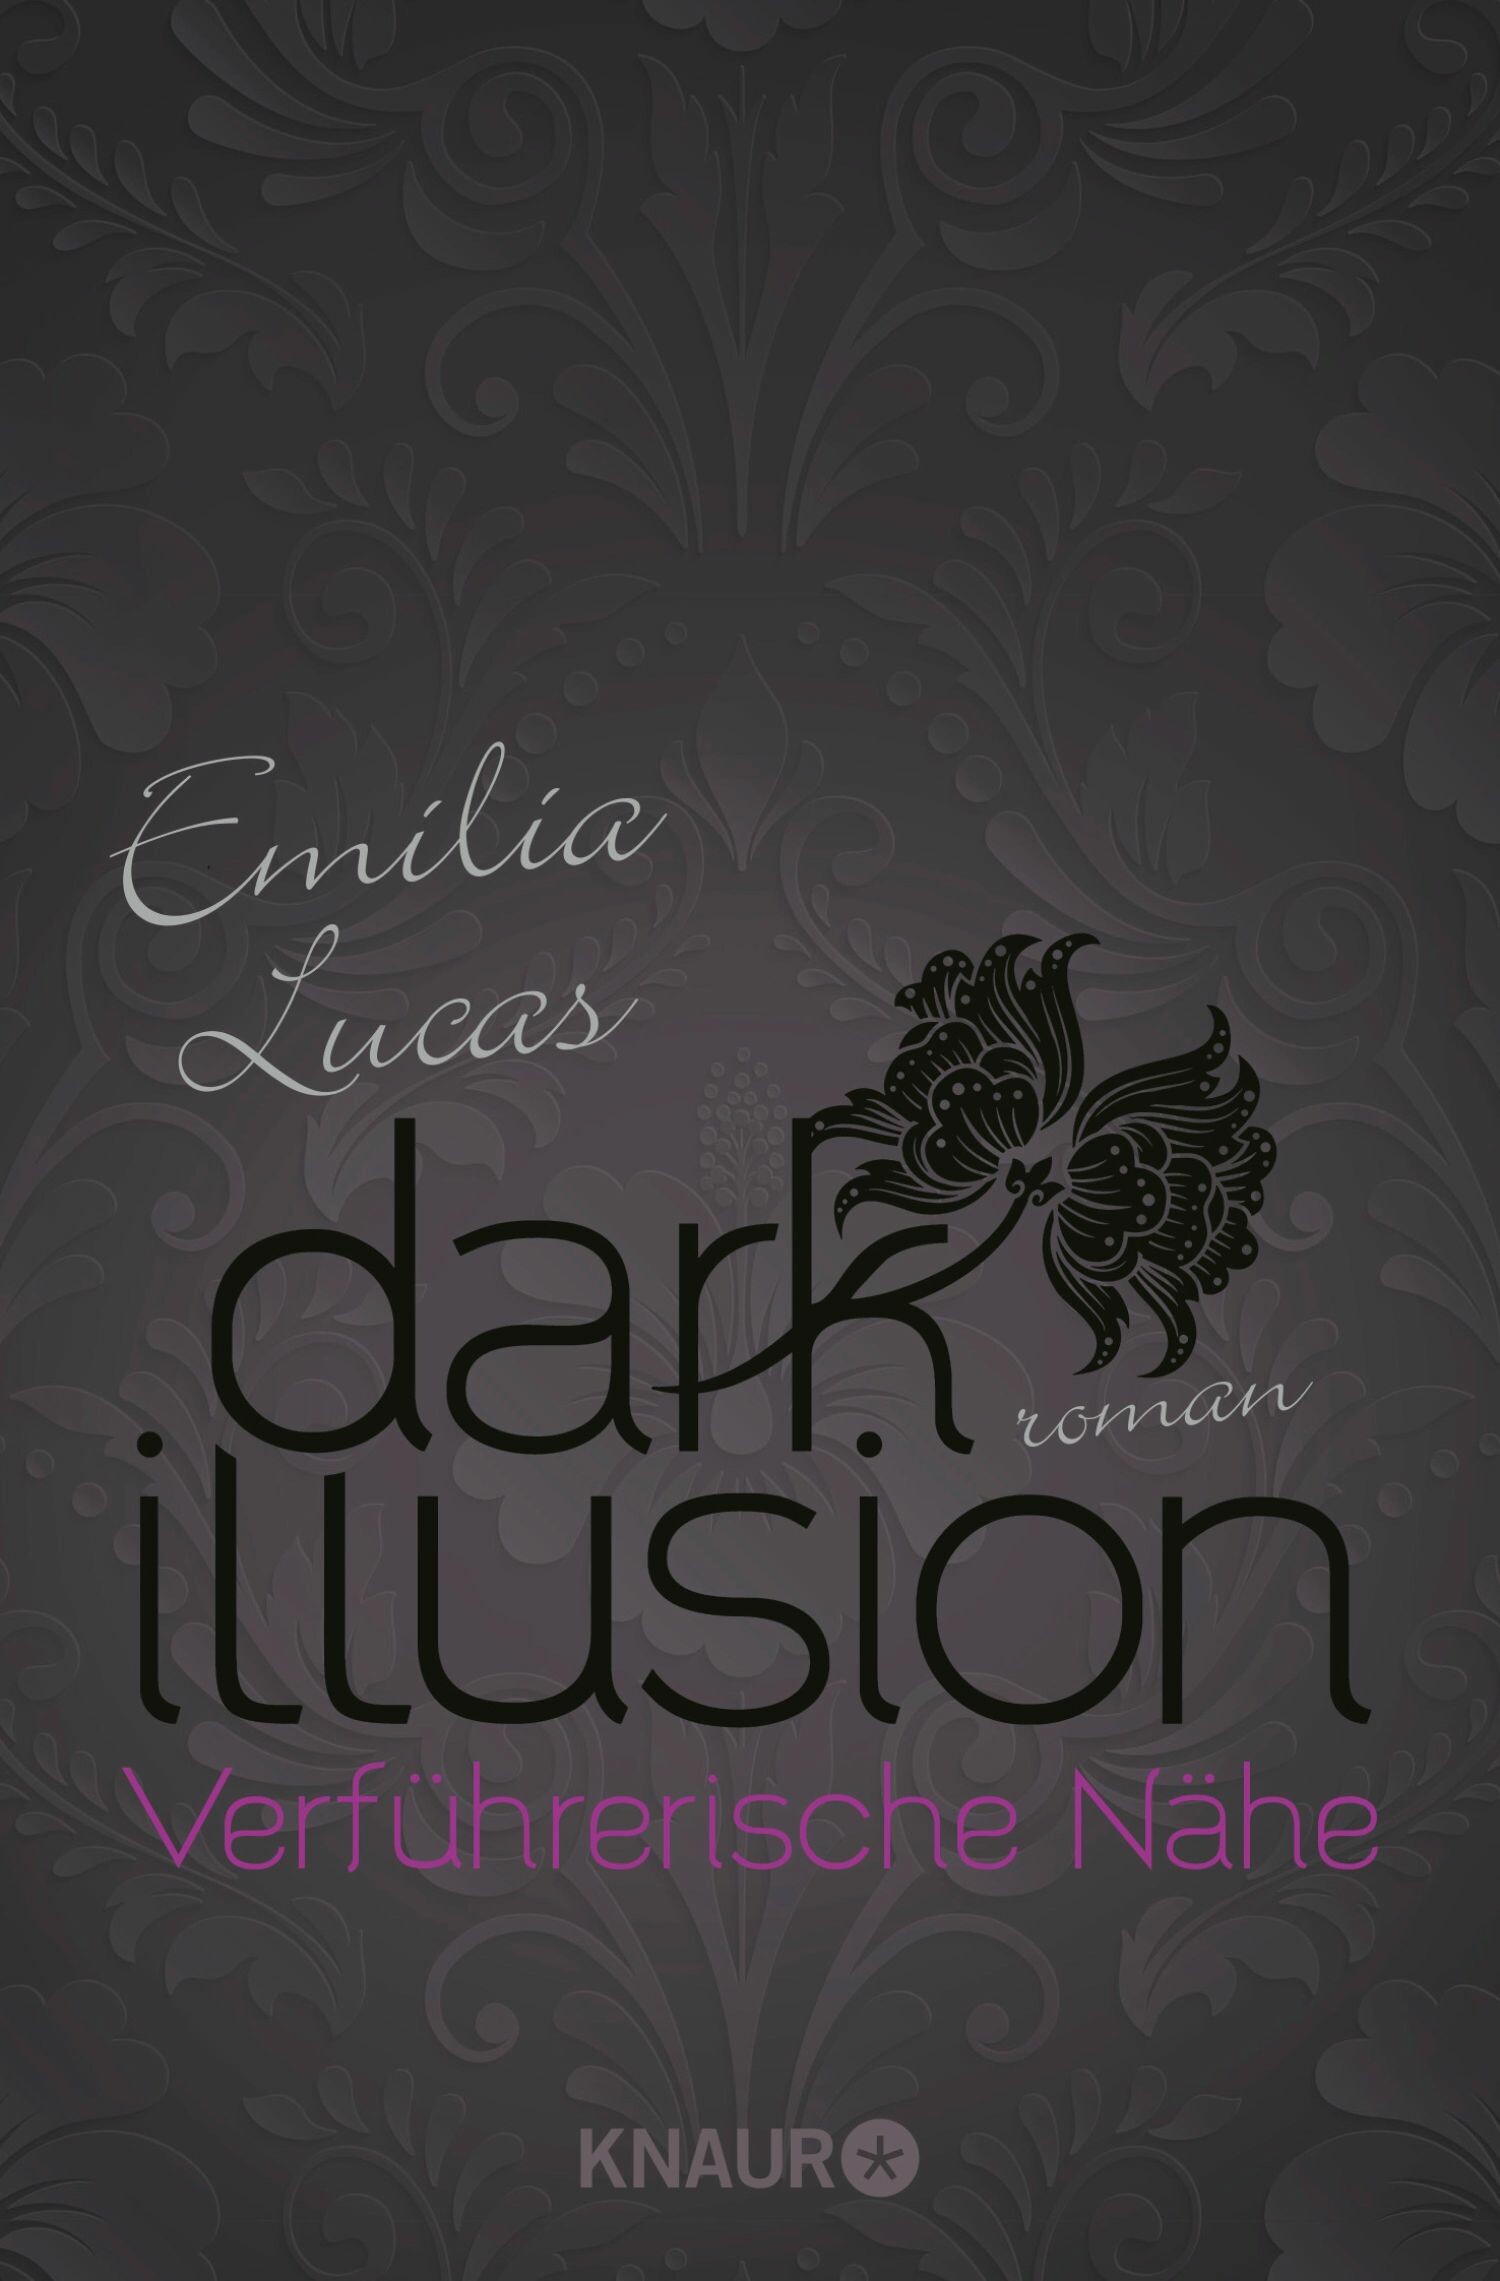 Dark Illusion - Verführerische Nähe